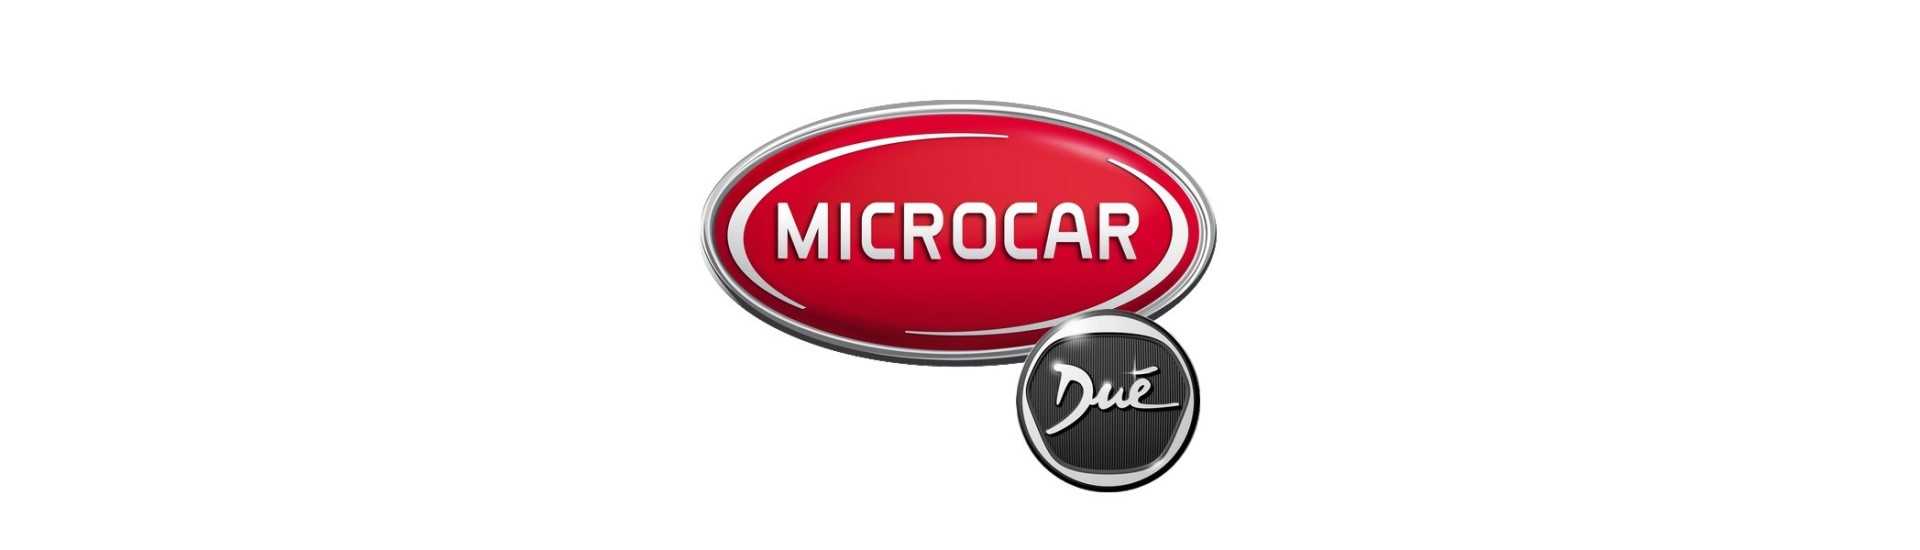 Bakre ljus till bästa pris för bil utan tillstånd Microcar Dué